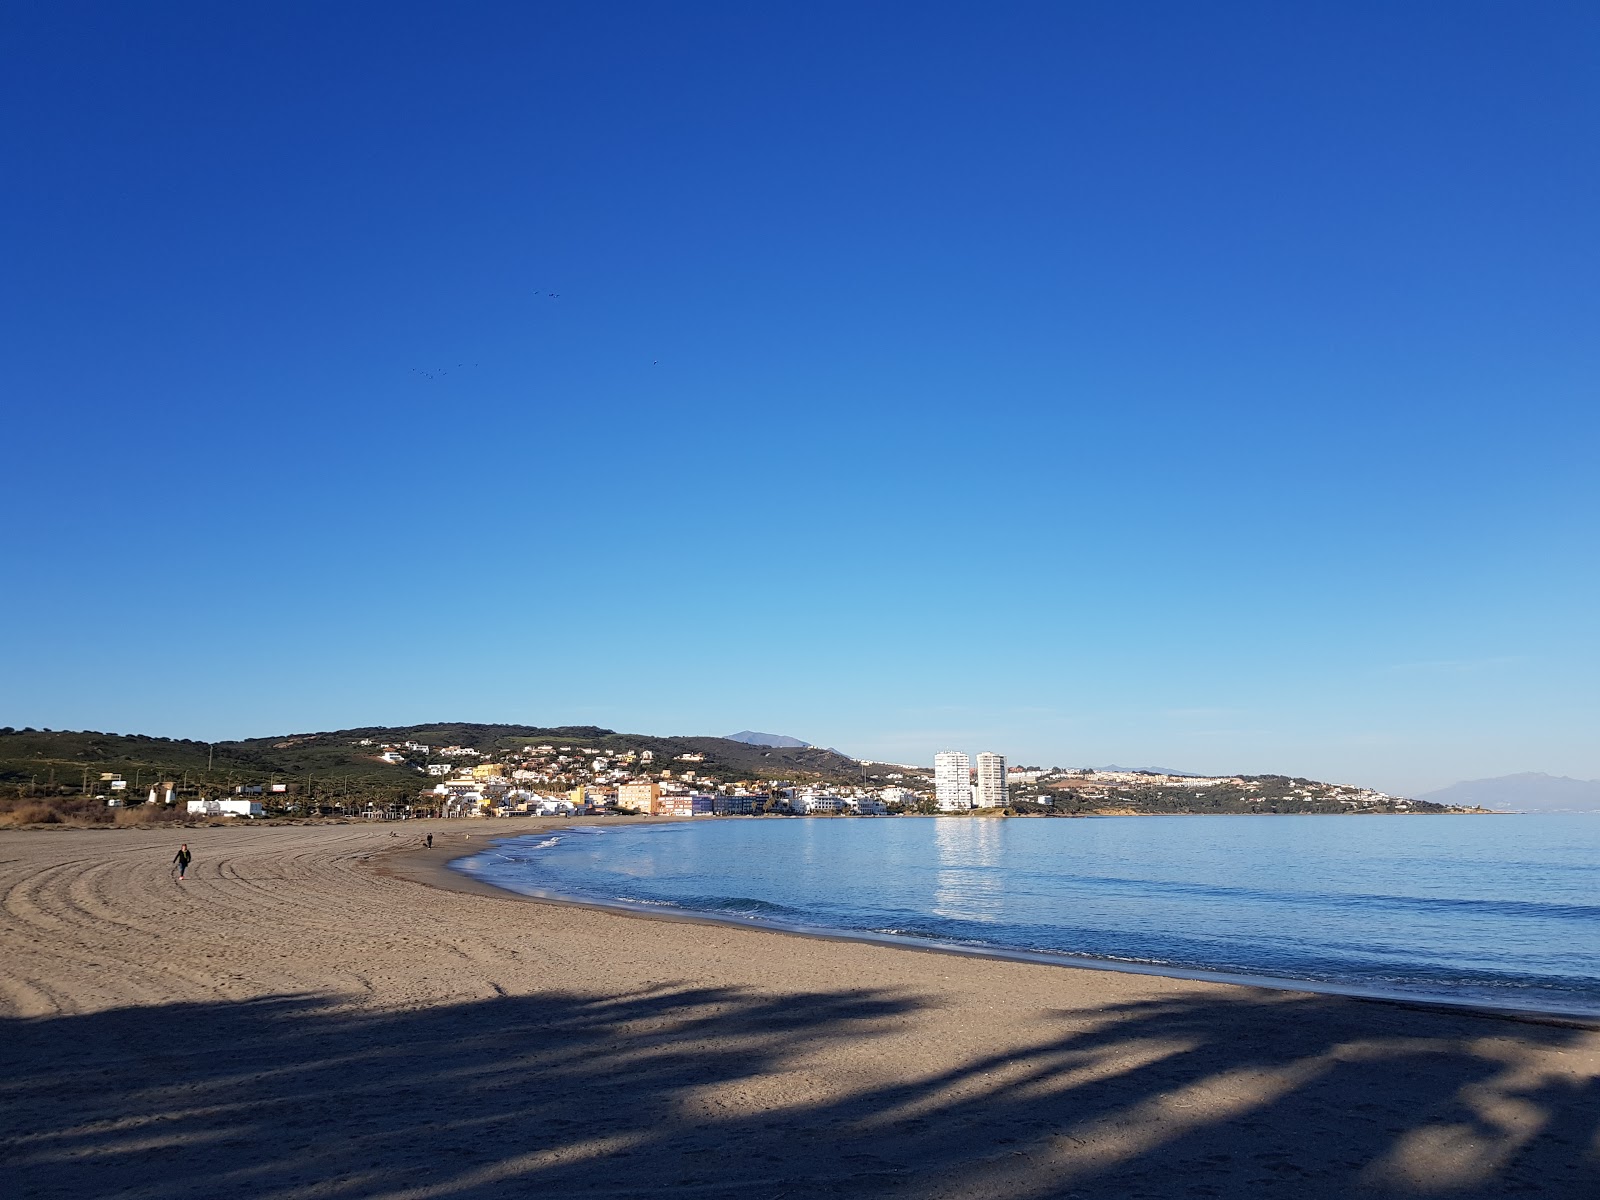 Foto von Playa de Torreguadiaro mit grauer sand Oberfläche